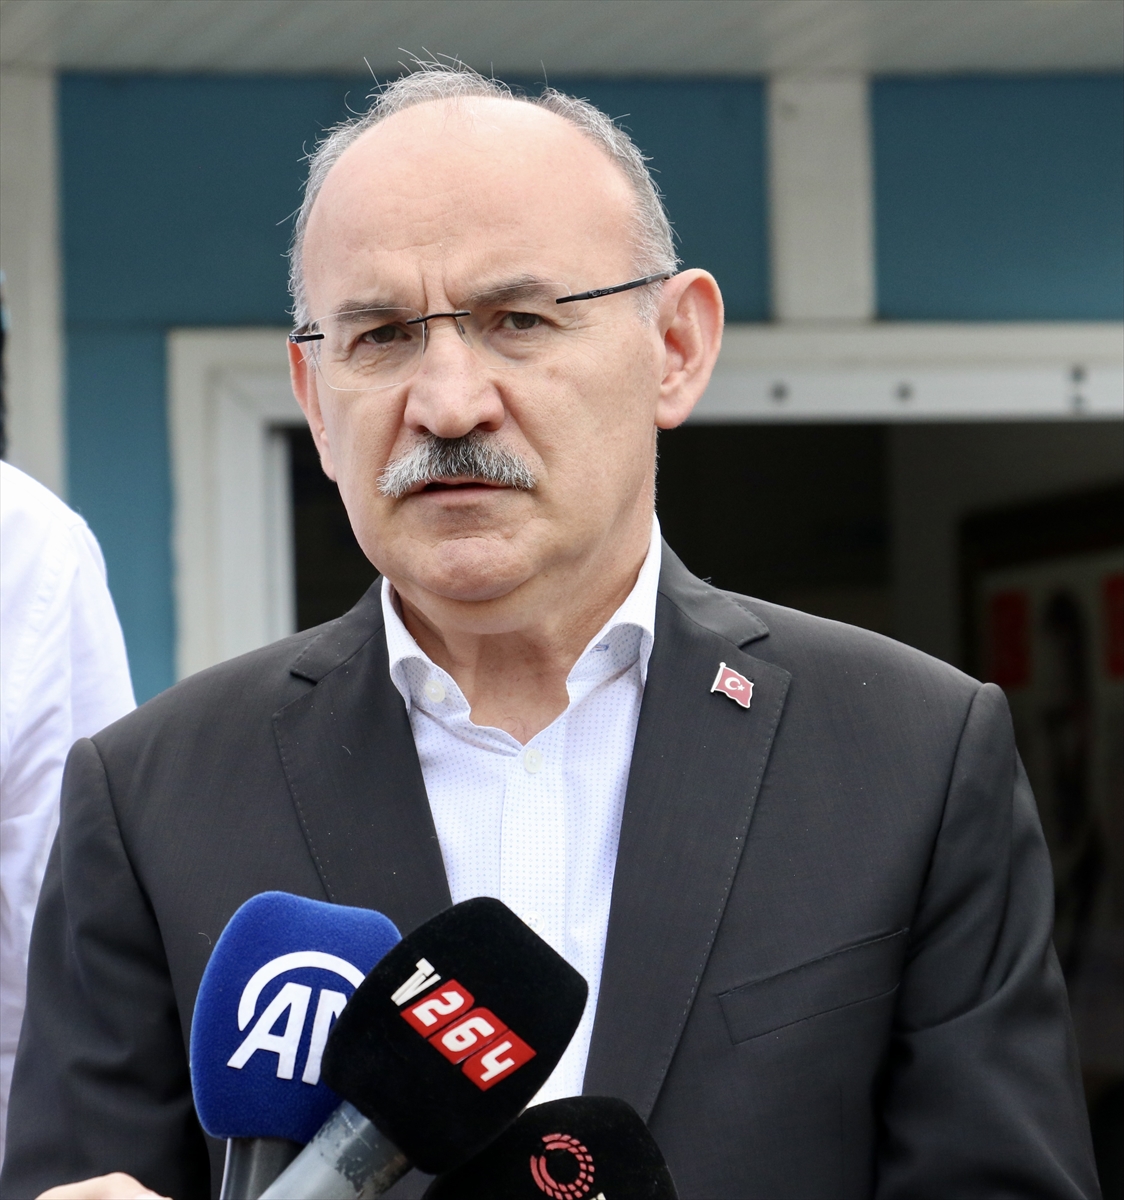 GÜNCELLEME – Sakarya'da eski Ferizli Belediye Başkanı Ahmet Soğuk uğradığı silahlı saldırıda öldürüldü